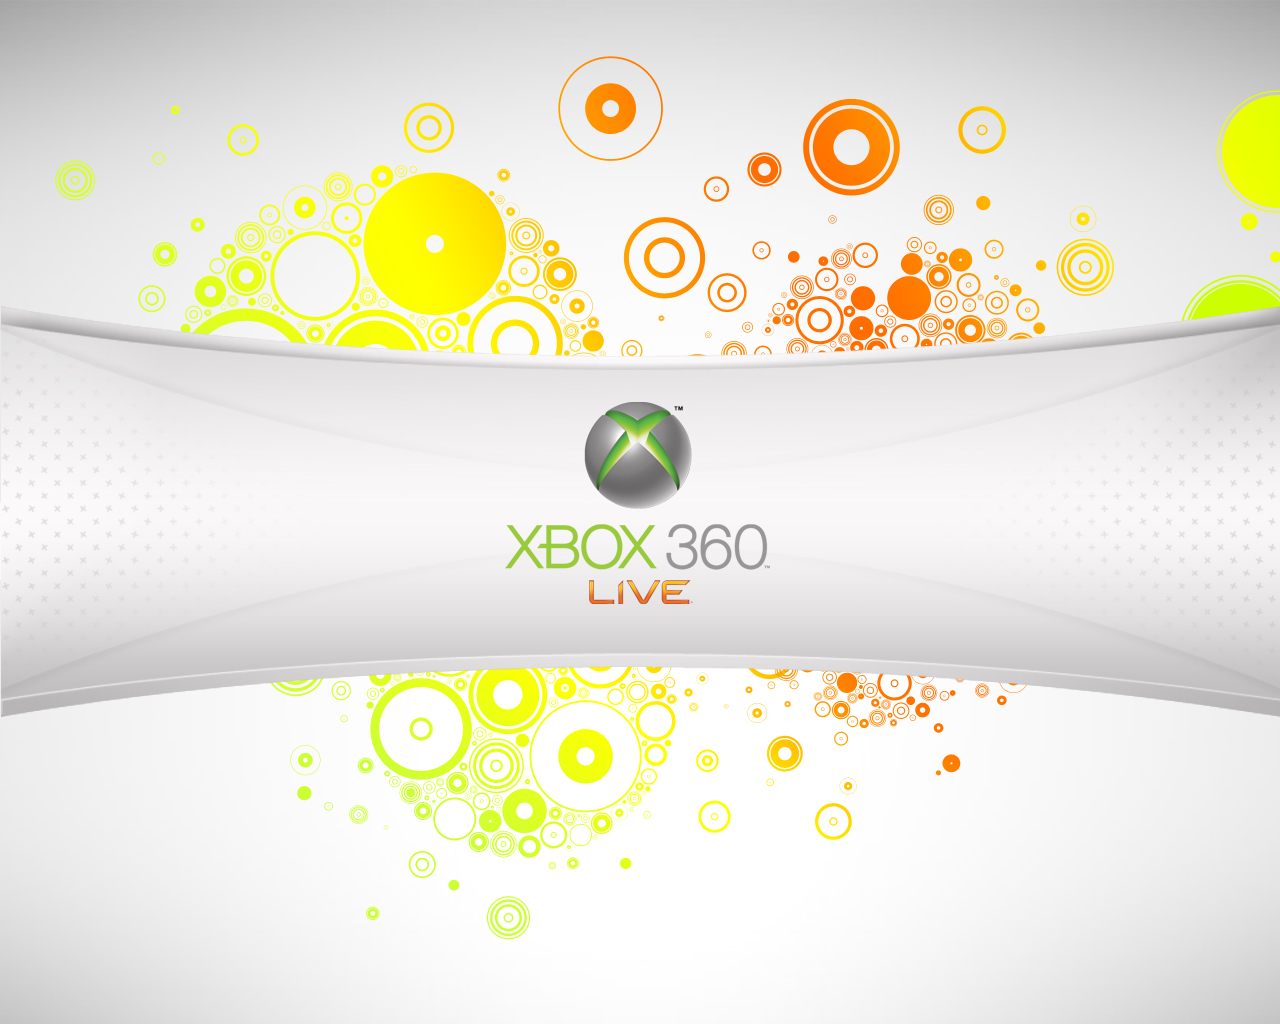 Xbox 360 là một trong những console game được yêu thích. Và giờ đây, bạn có thể tải miễn phí và an toàn các dịch vụ cần thiết cho Xbox 360 của mình. Điều đó có nghĩa là bạn có thể trải nghiệm các tựa game hay nhất một cách dễ dàng và an toàn hơn bao giờ hết!